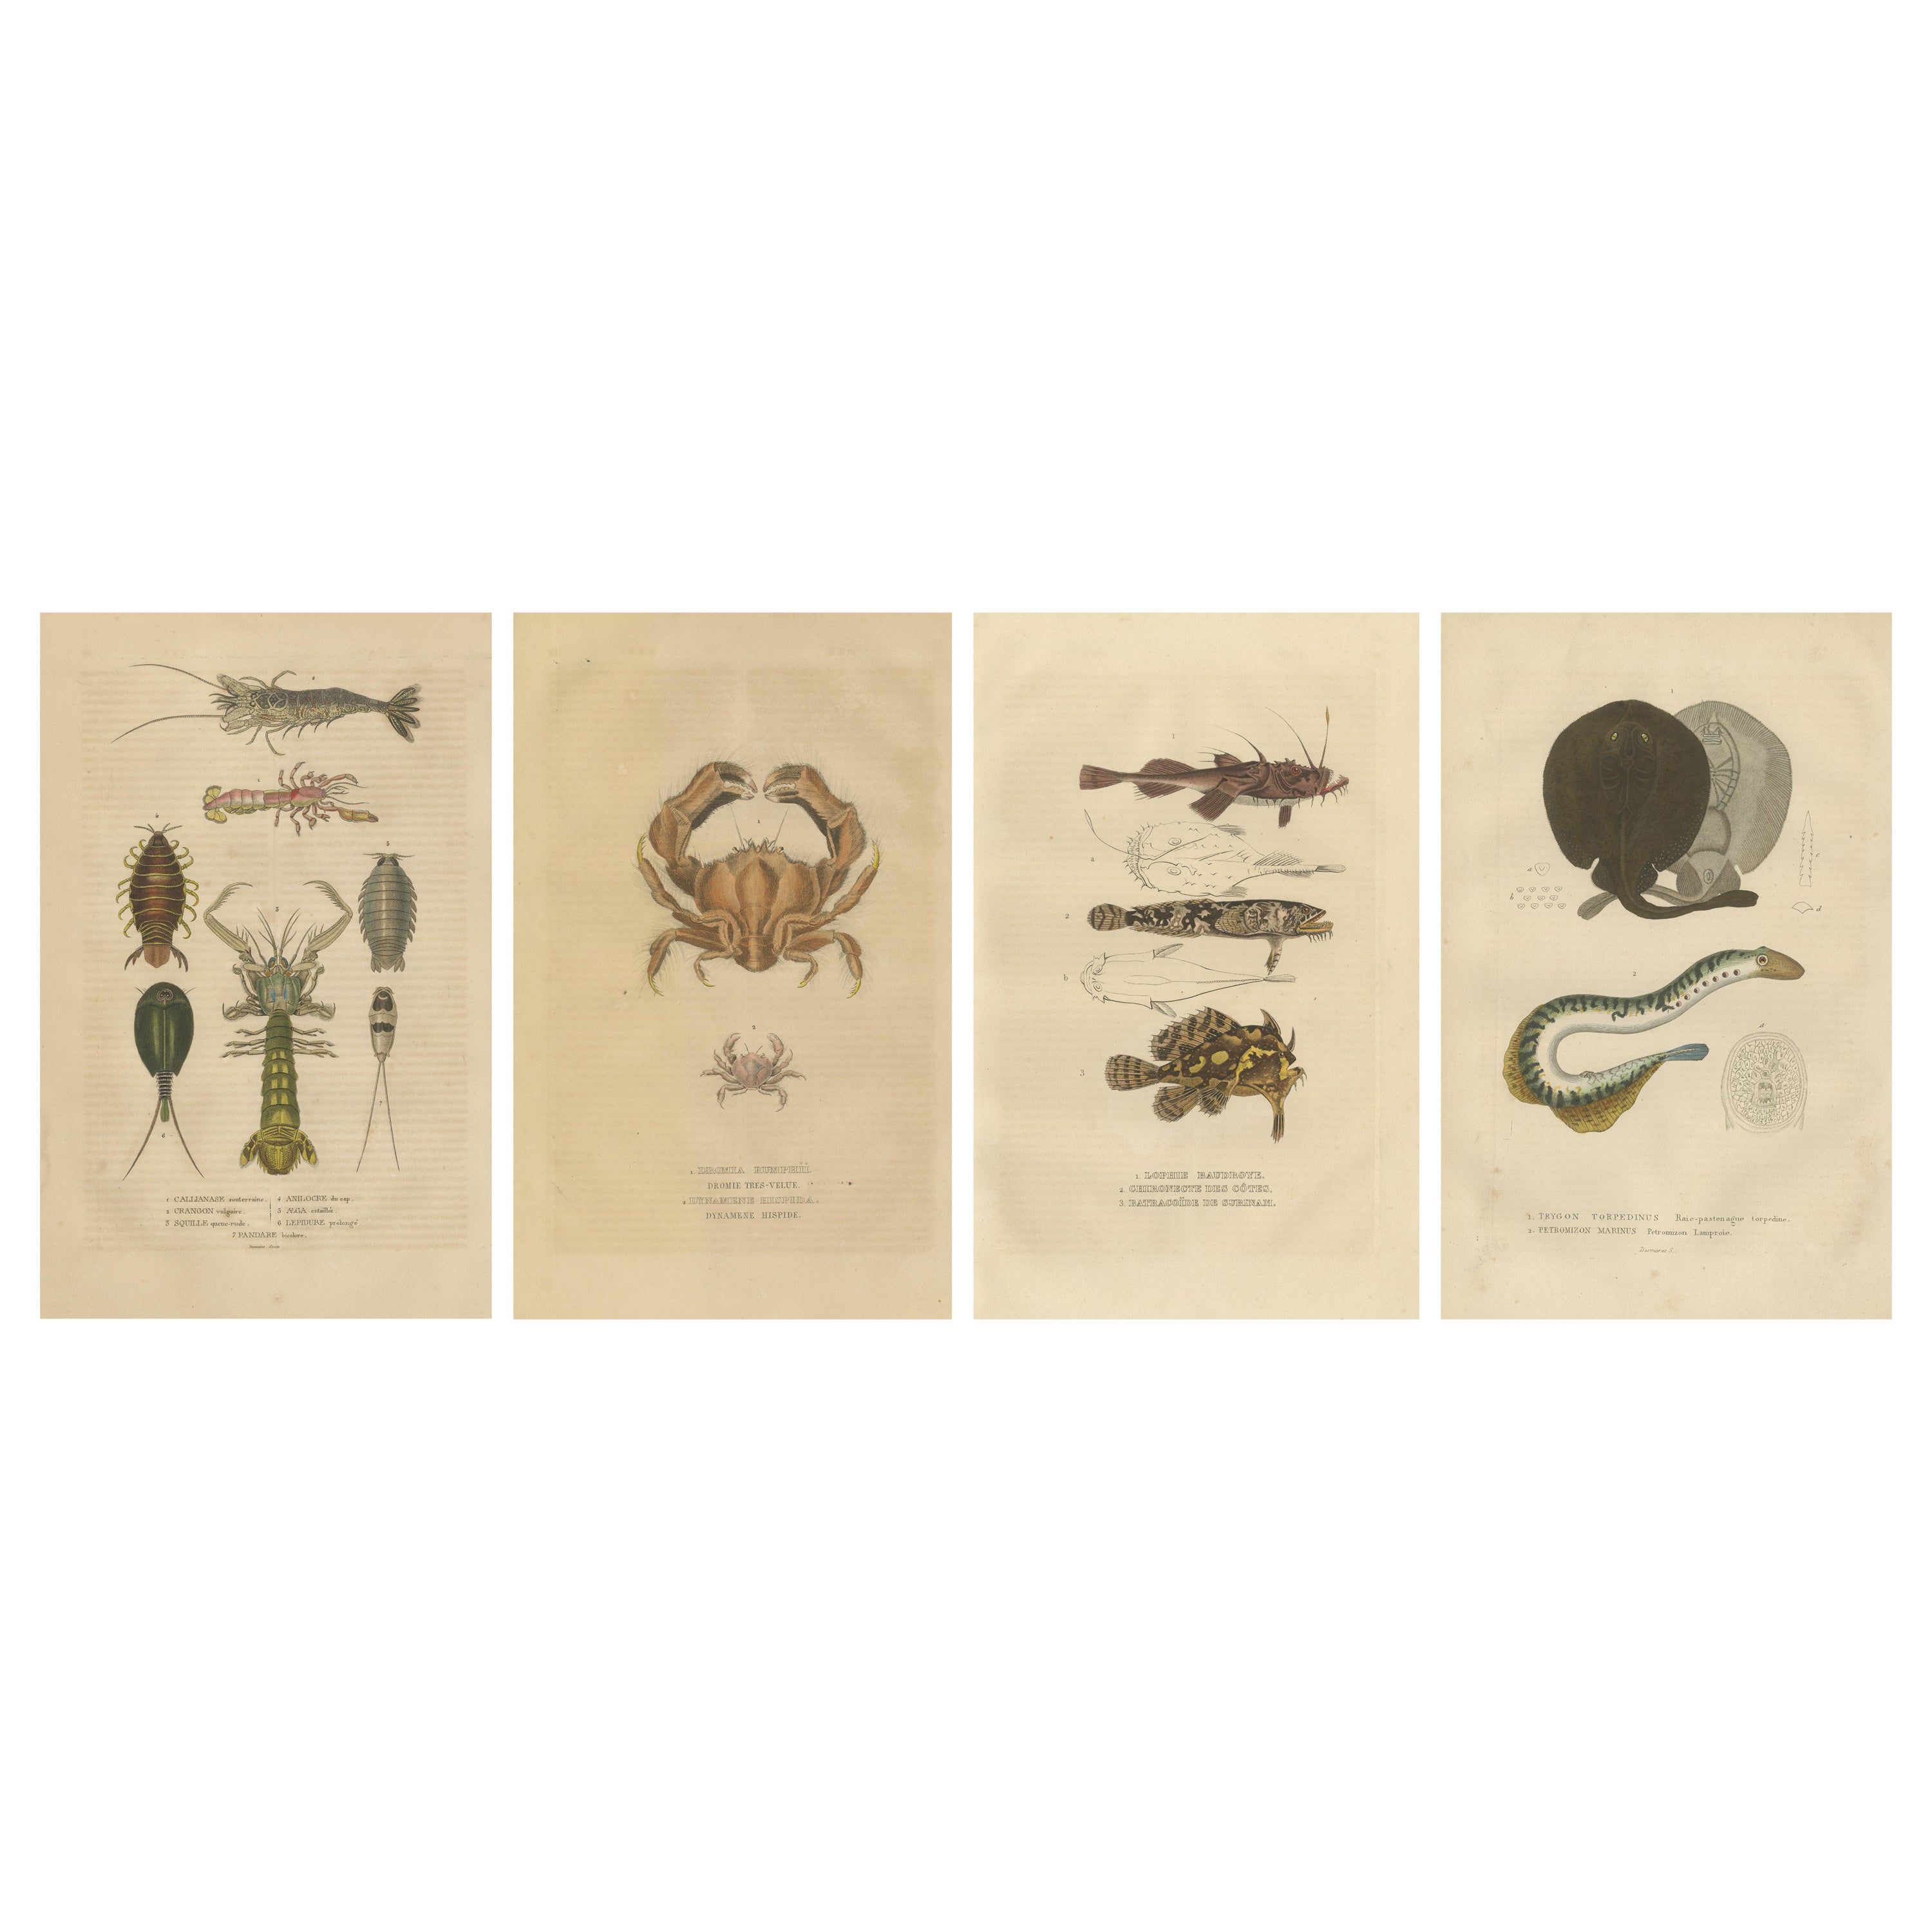 Antike handkolorierte Aquatische und insektenförmige Gravuren im antiken Stil, 1845